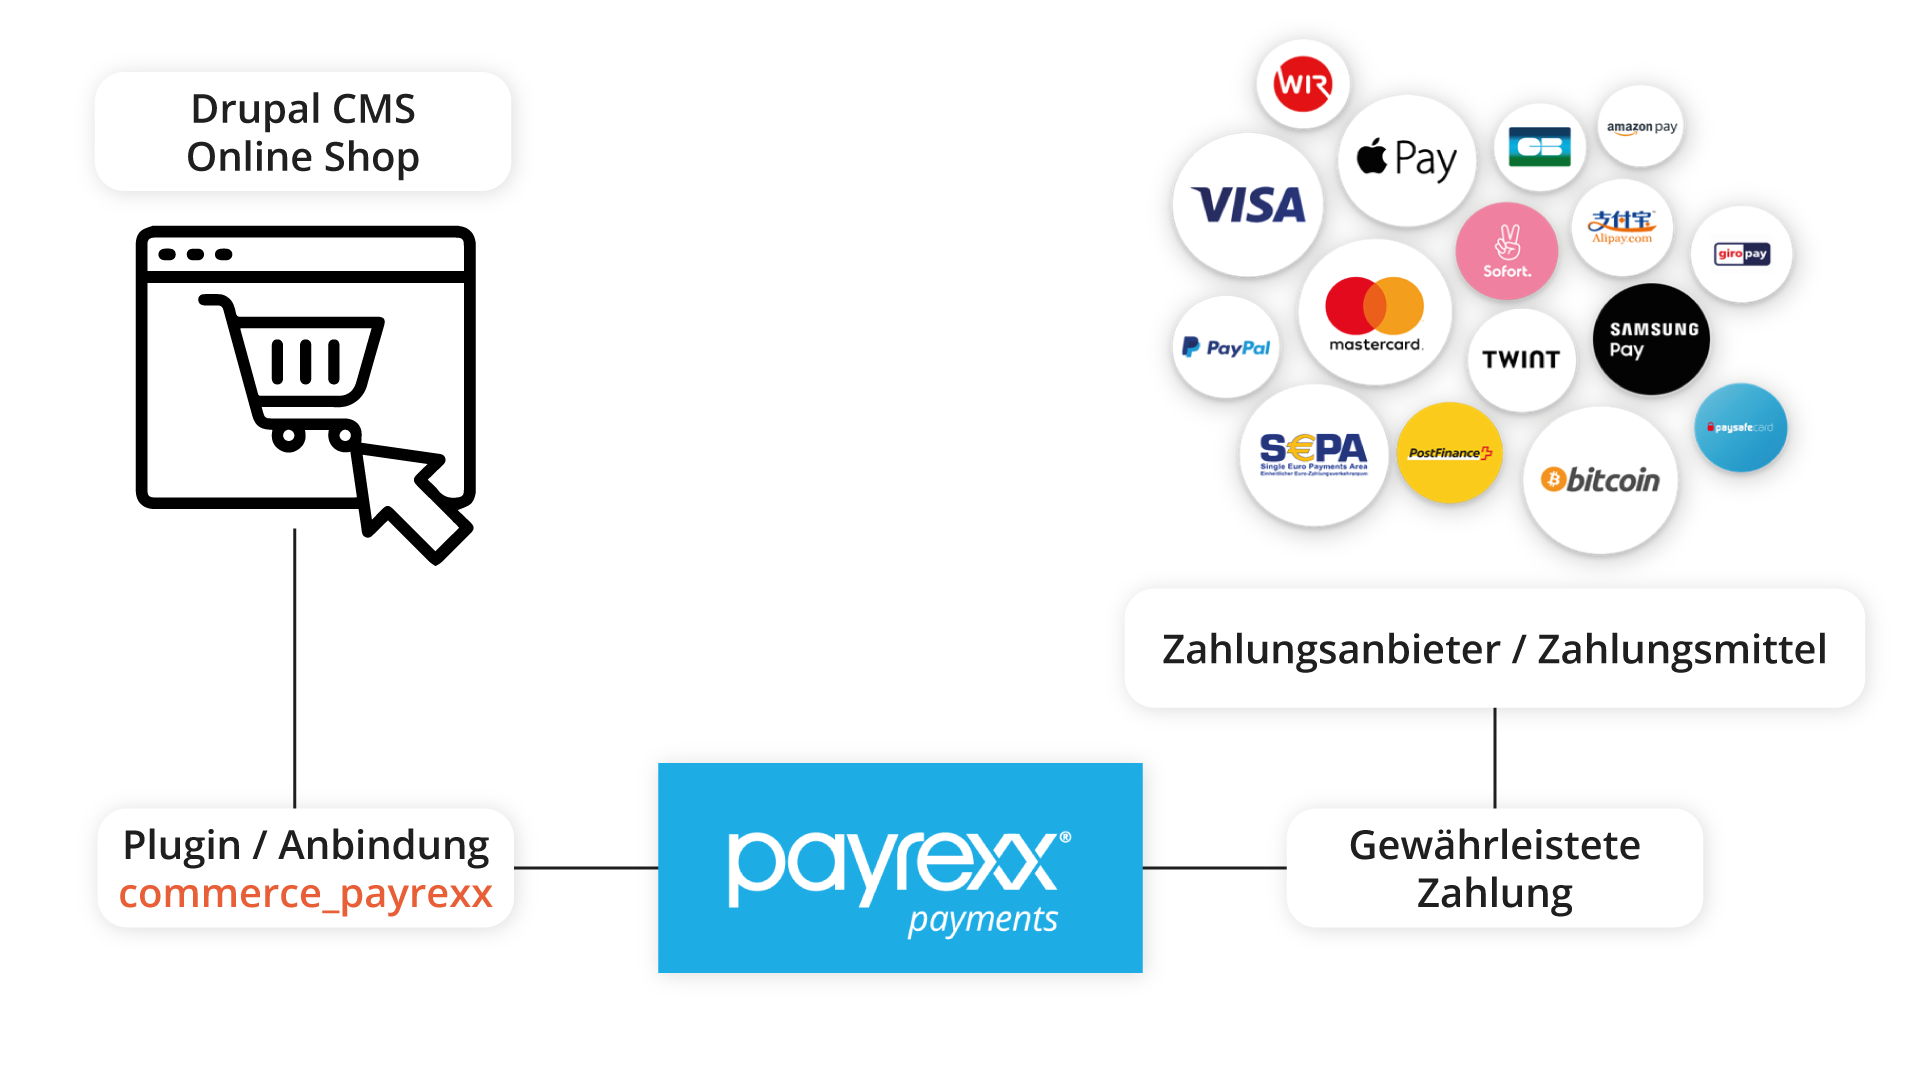 Ablauf von Payrexx vom CMS über das Plugin hin zum Zahlungsnabieter über Payrexx